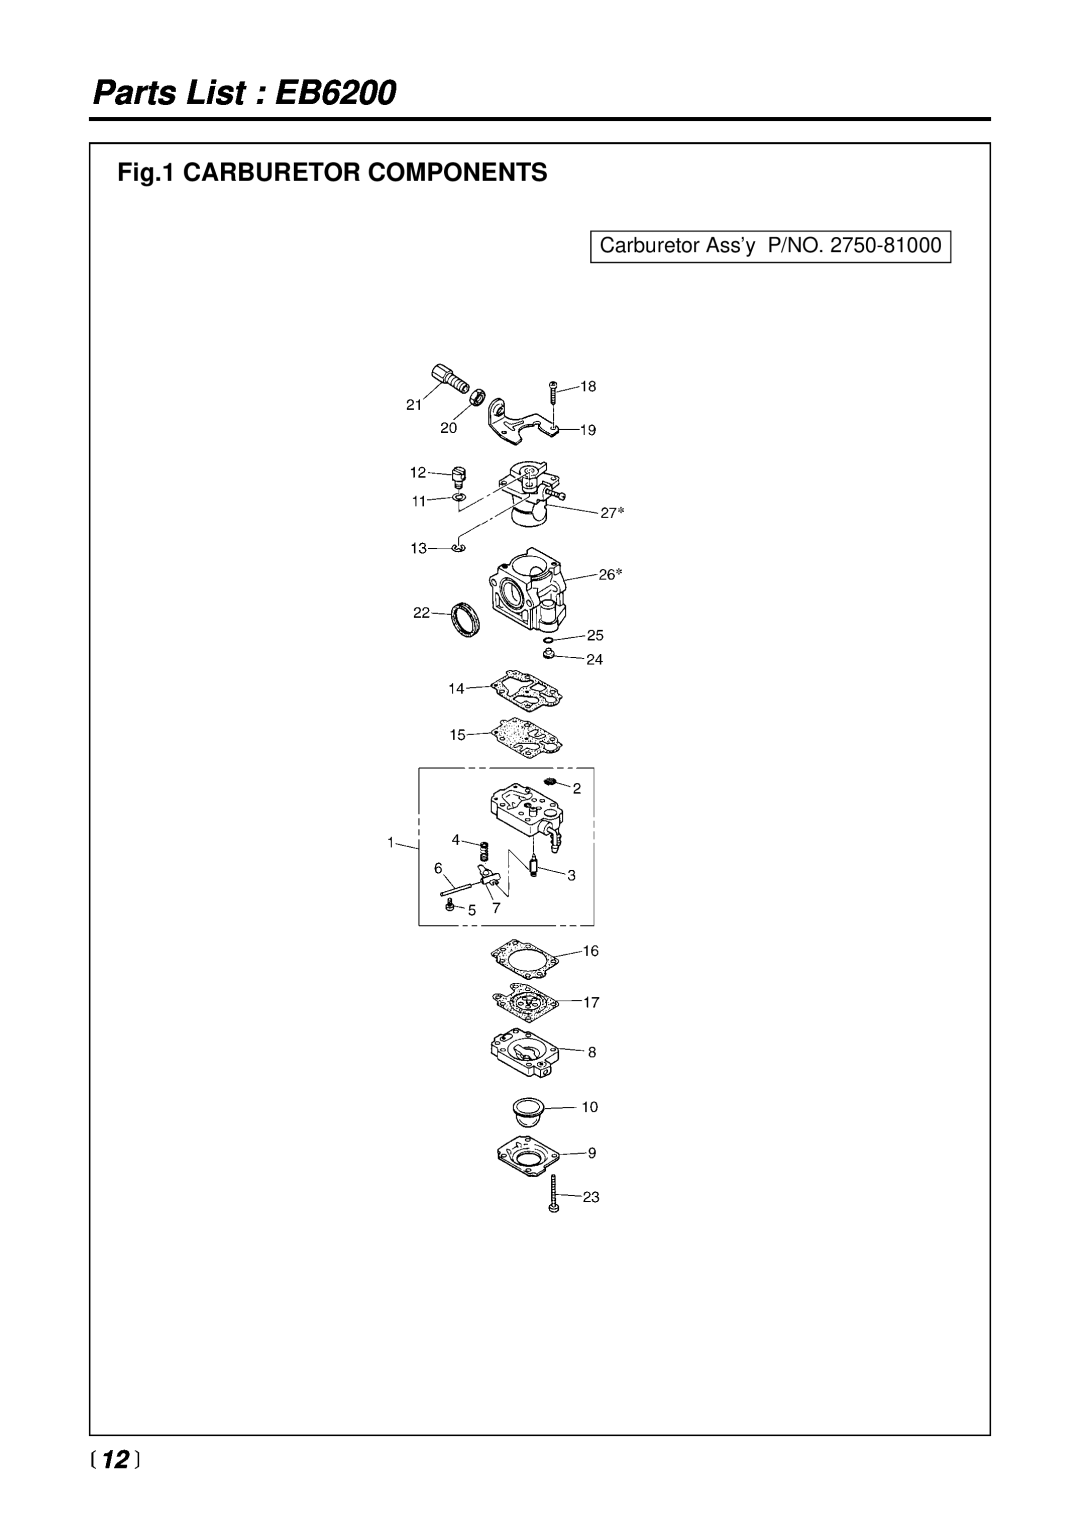 RedMax manual Parts List EB6200, Carburetor Components, 12  